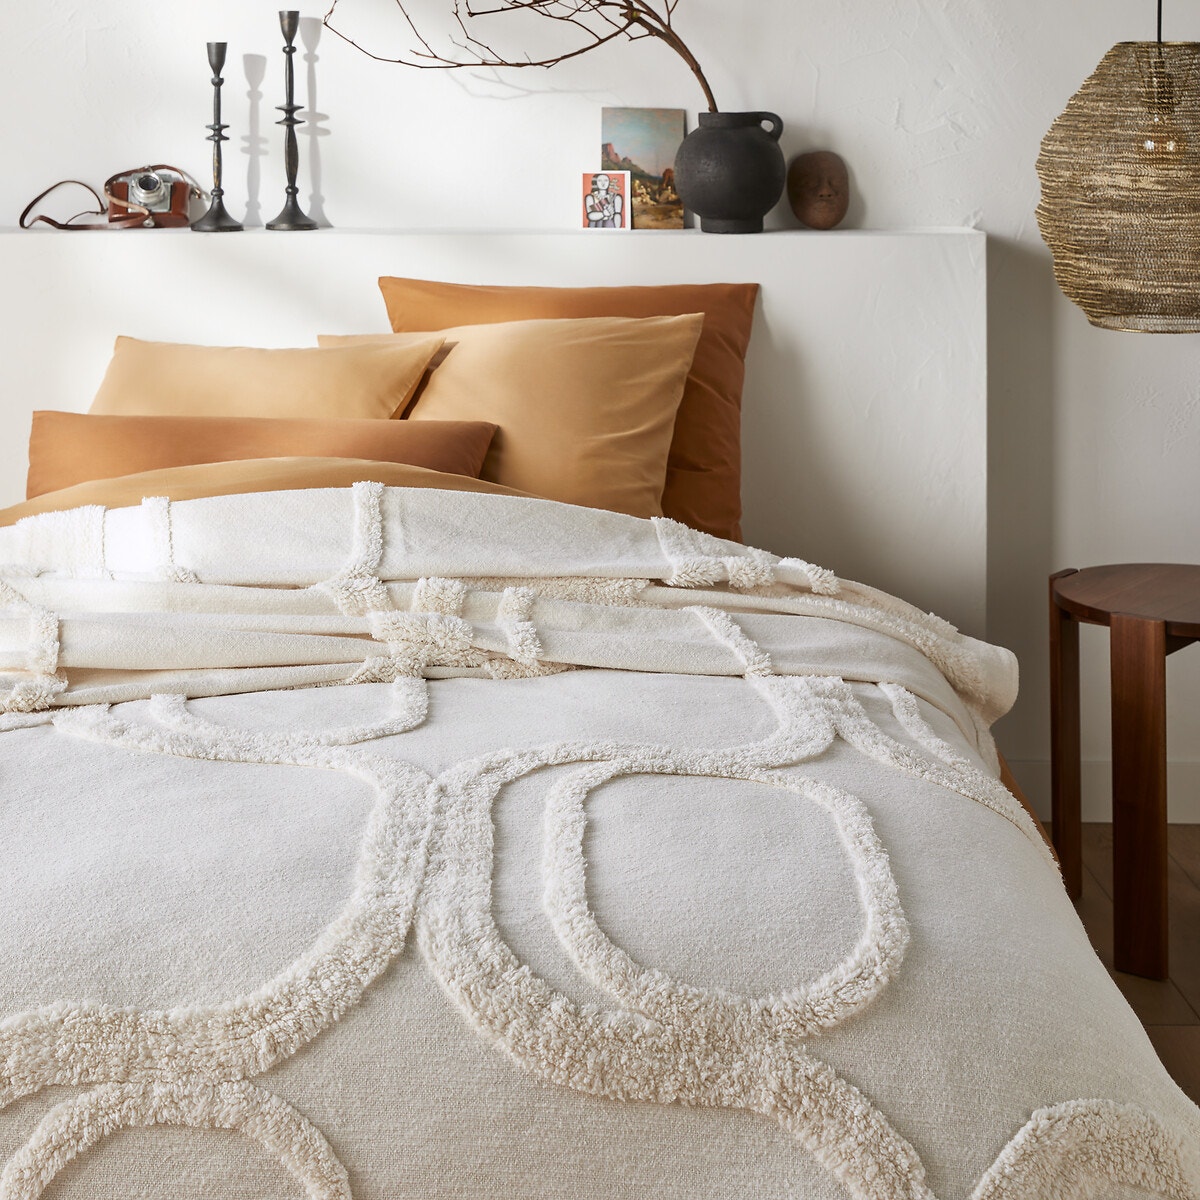 Σπίτι > Λευκά είδη > Υπνοδωμάτιο > Παπλώματα, κουβερλί > Καλύμματα κρεβατιού Βαμβακερό κάλυμμα κρεβατιού με tufted όψη 180x230 cm